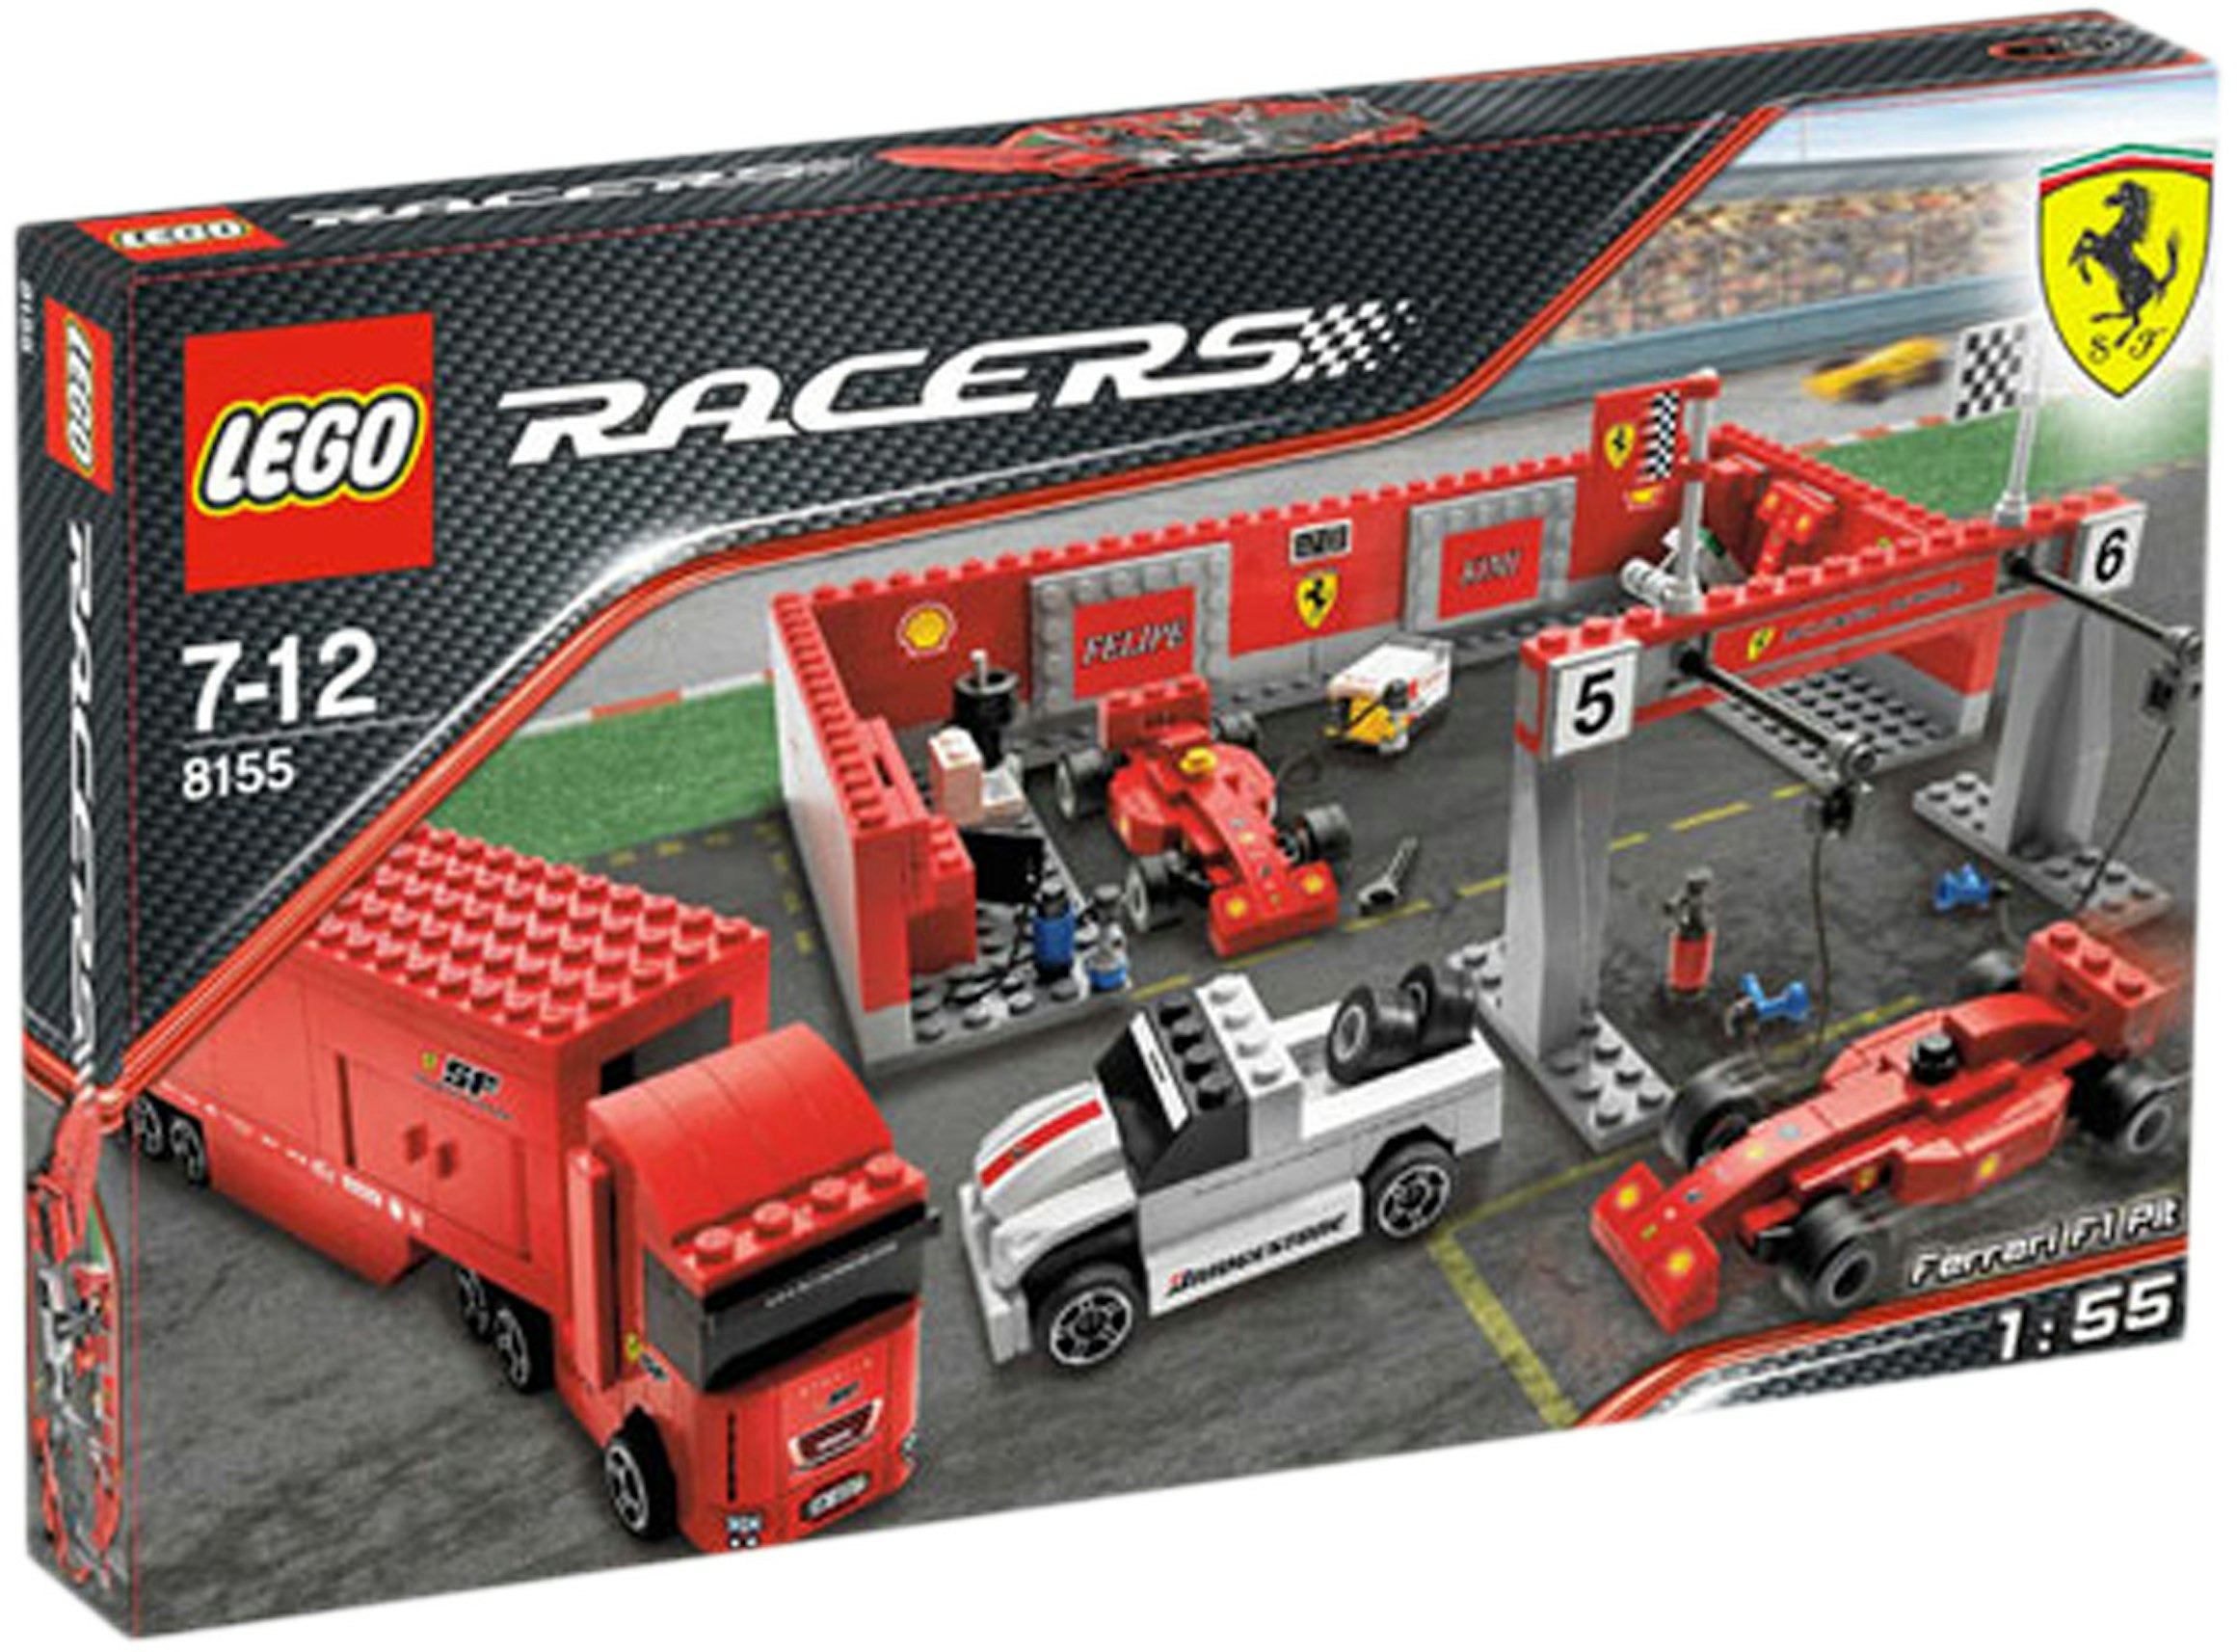 Selvforkælelse Manchuriet Orient LEGO Racers Ferrari F1 Pit Set 8155 - US